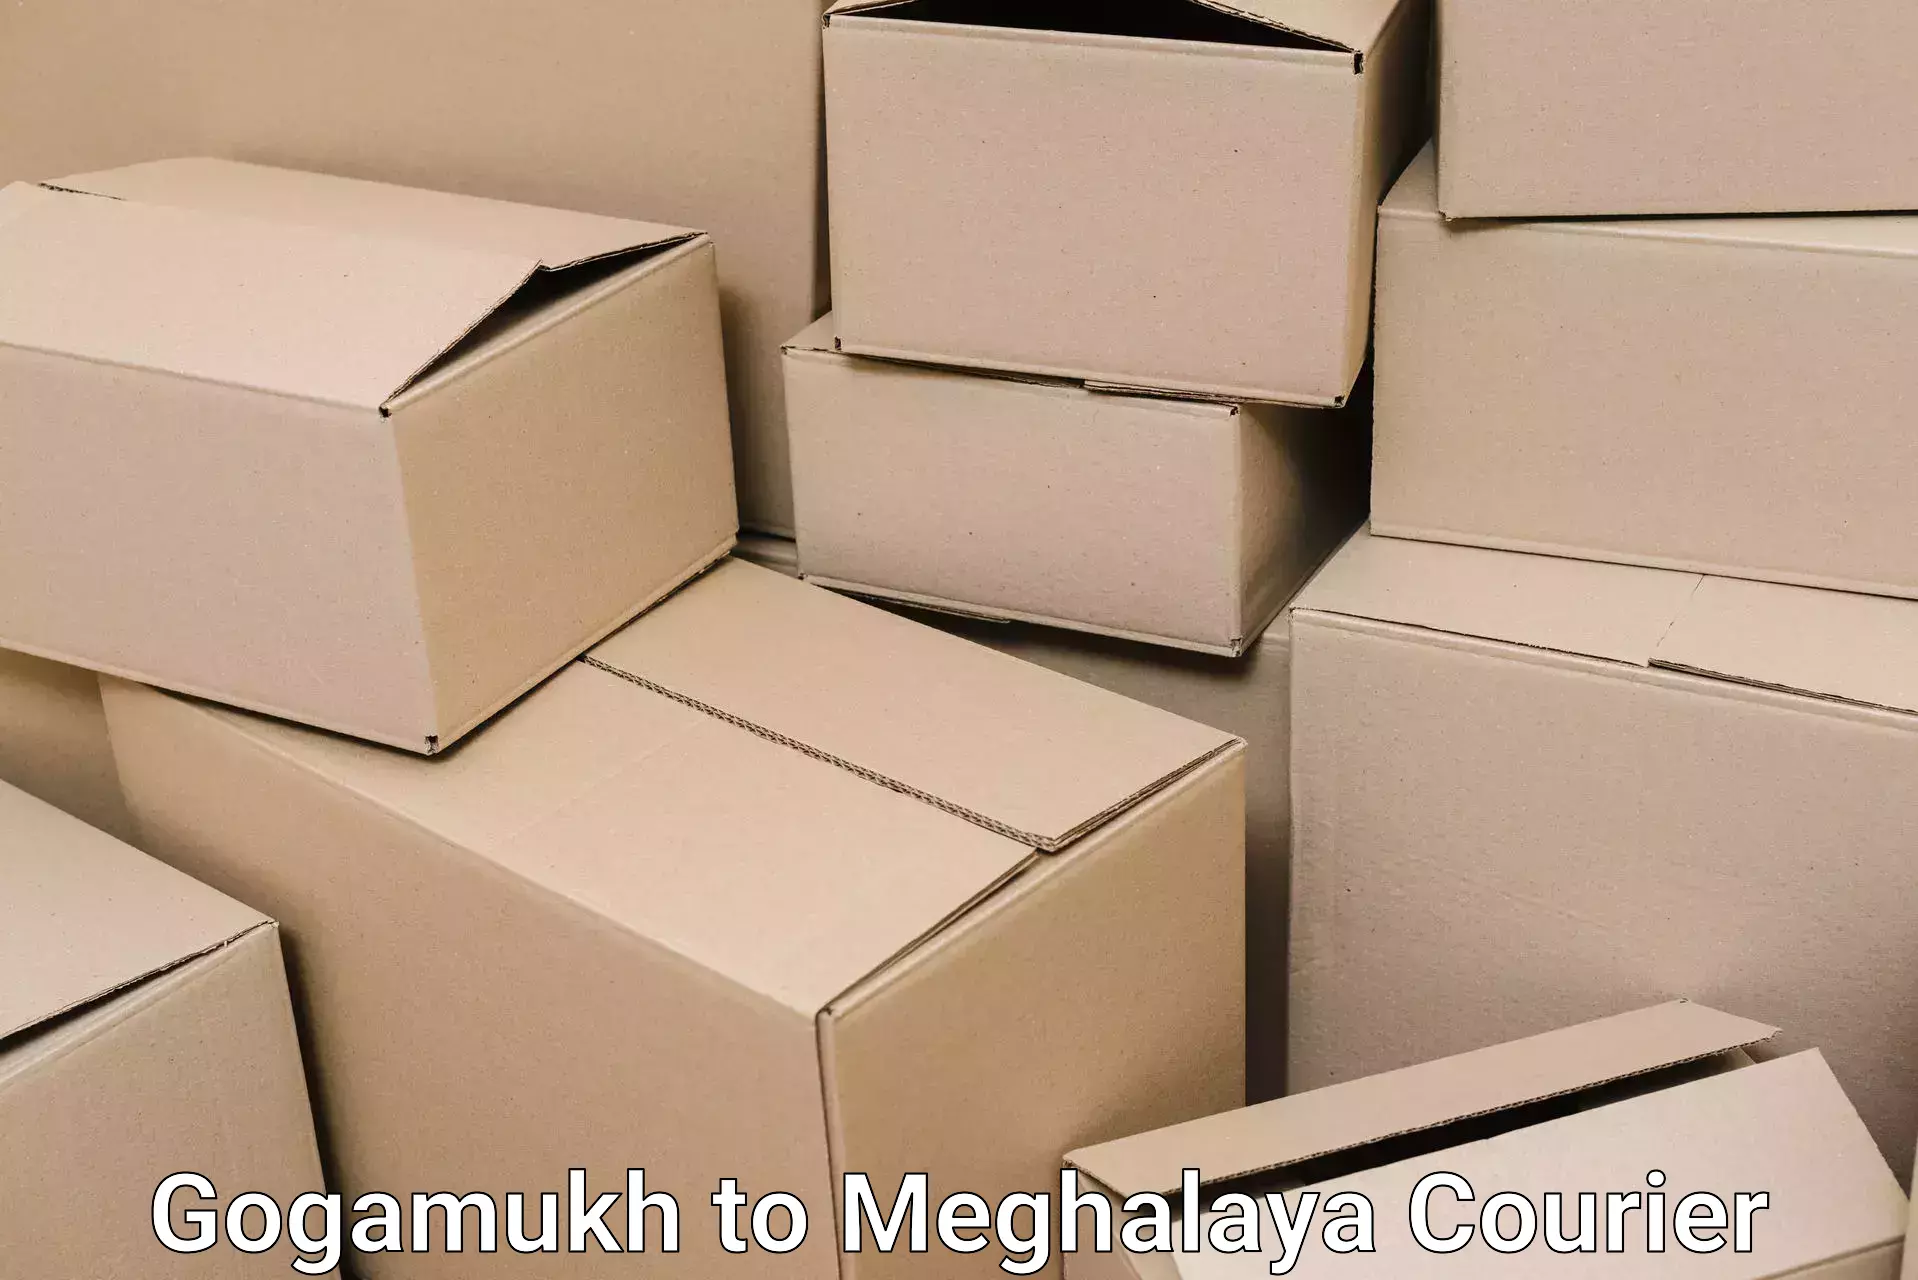 Furniture moving assistance Gogamukh to Meghalaya